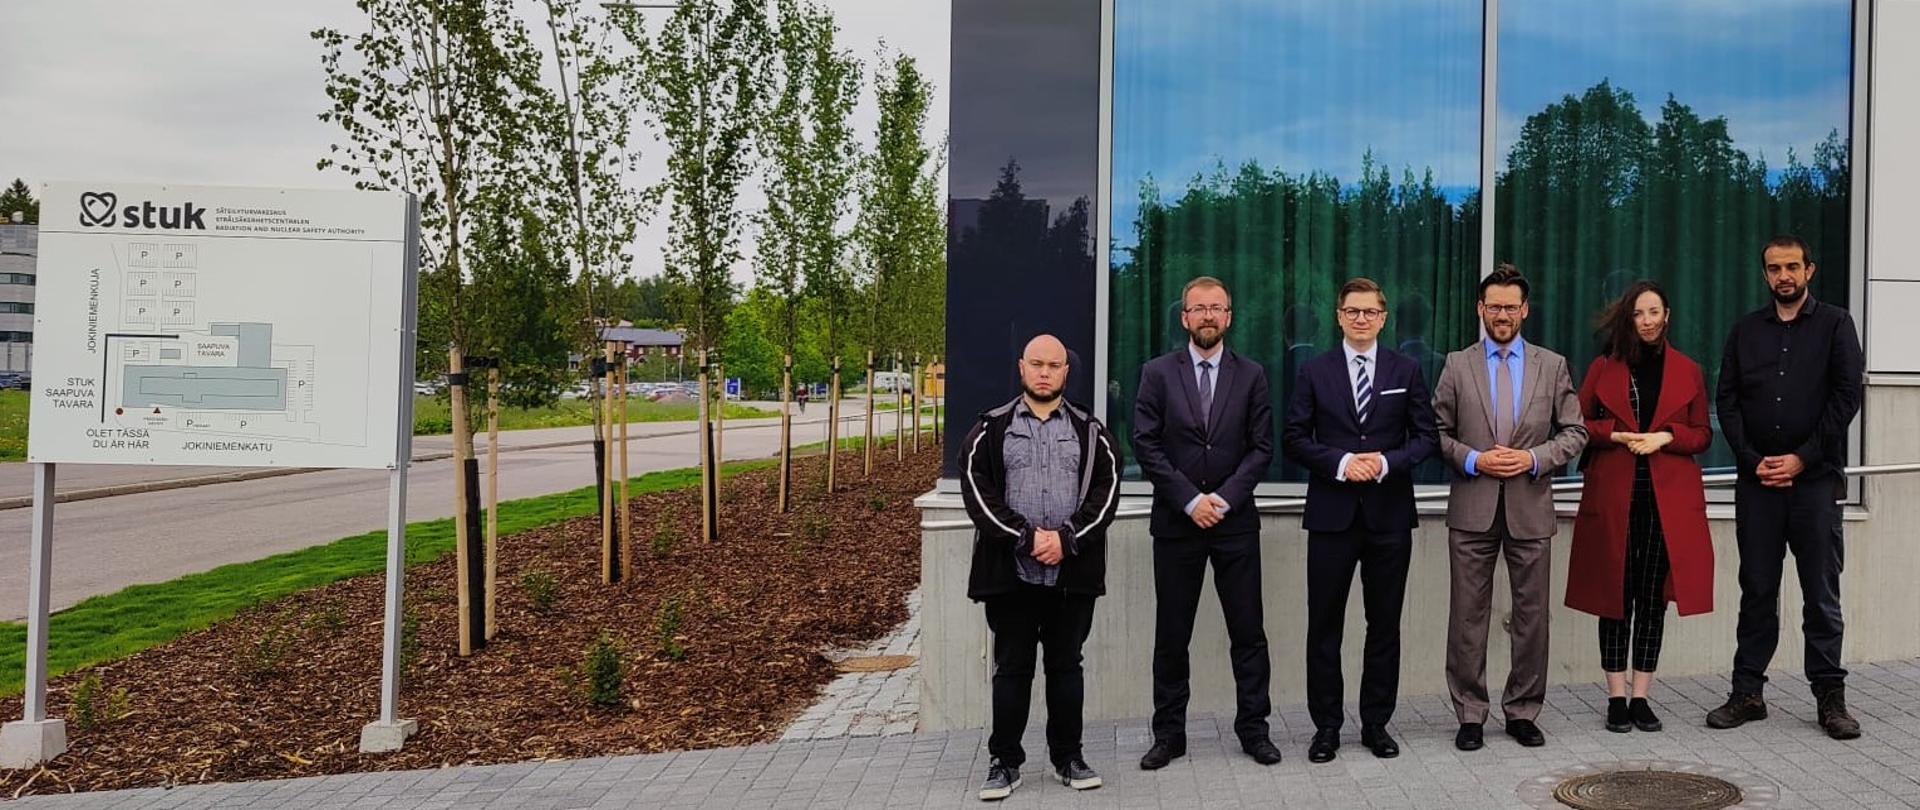 Prezes PAA dr Łukasz Młynarkiewicz oraz pozostali członkowie delegacji PAA stoją z władzami fińskiego urzędu dozoru jądrowego (STUK) przed jego siedzibą w Helsinkach.